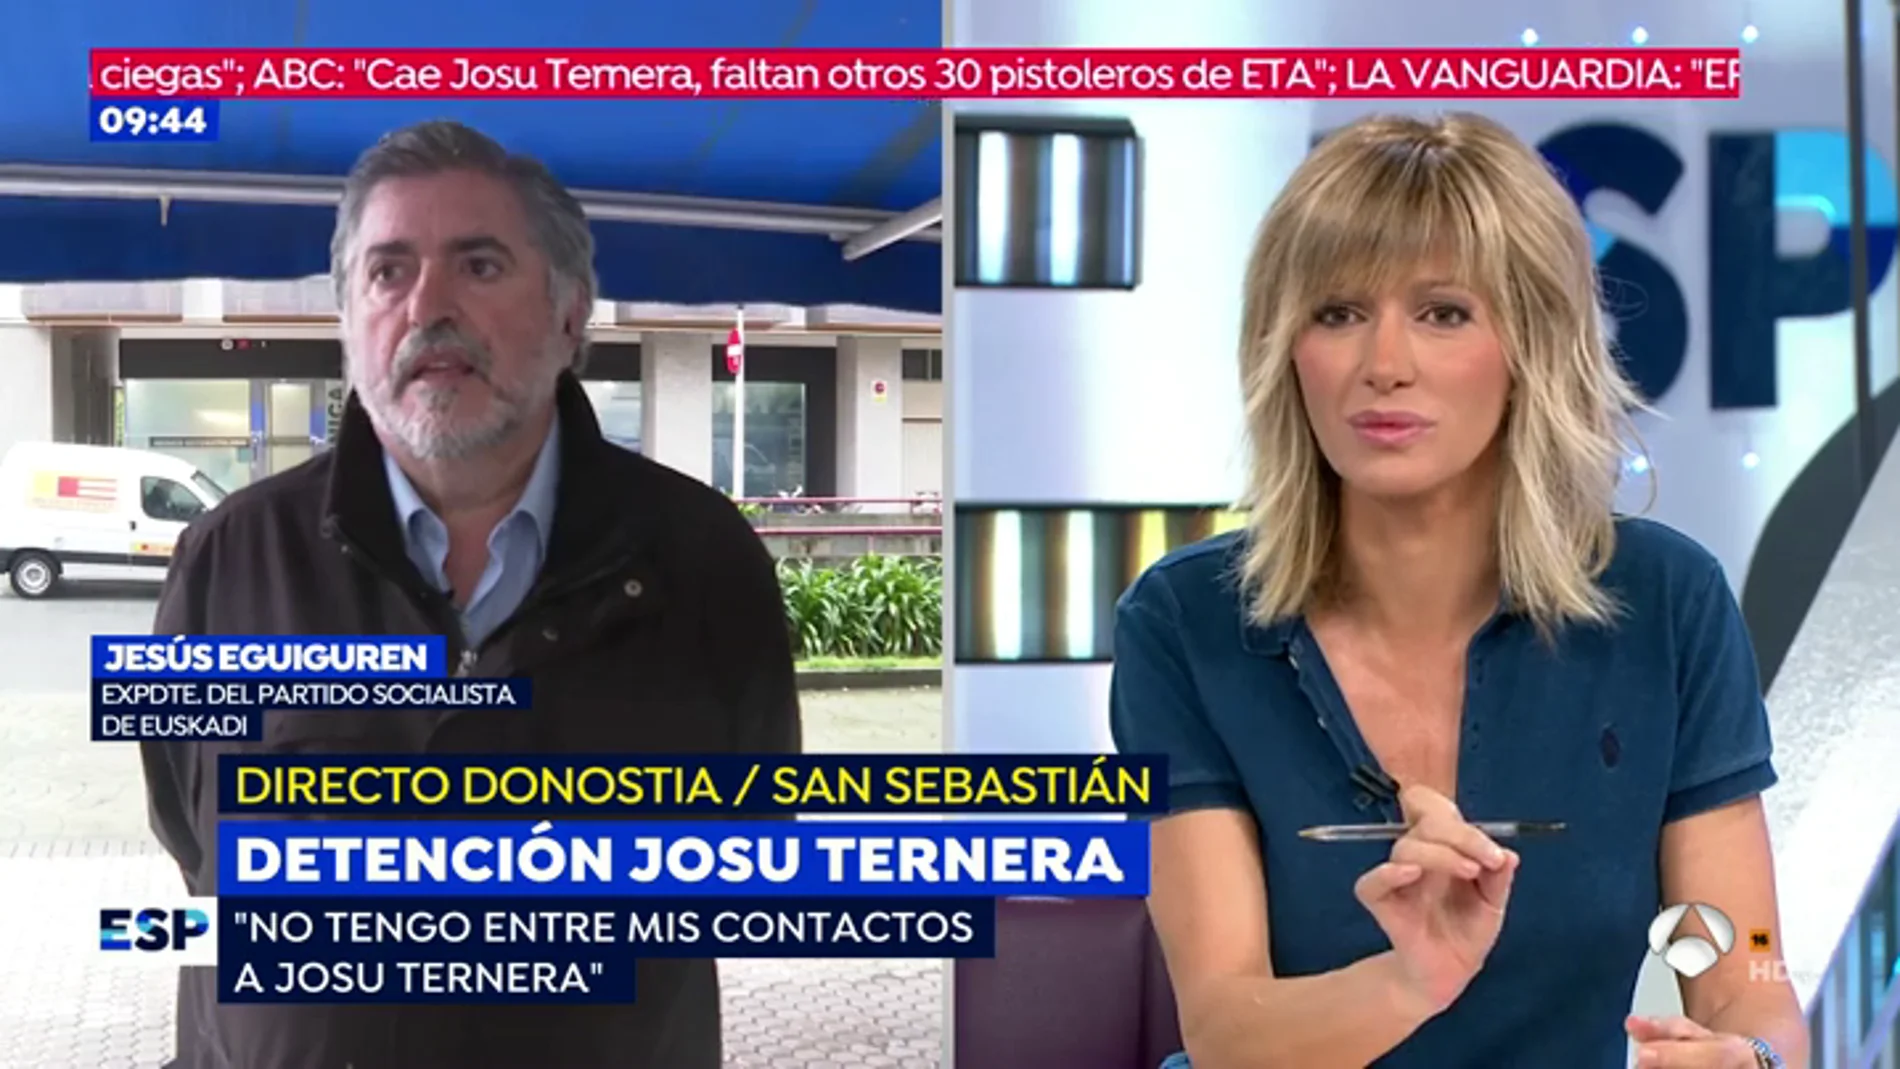 Eguiguren pide disculpas a las víctimas de ETA por llamar "héroe" a Josu Ternera: "Lo han malintrepretado"